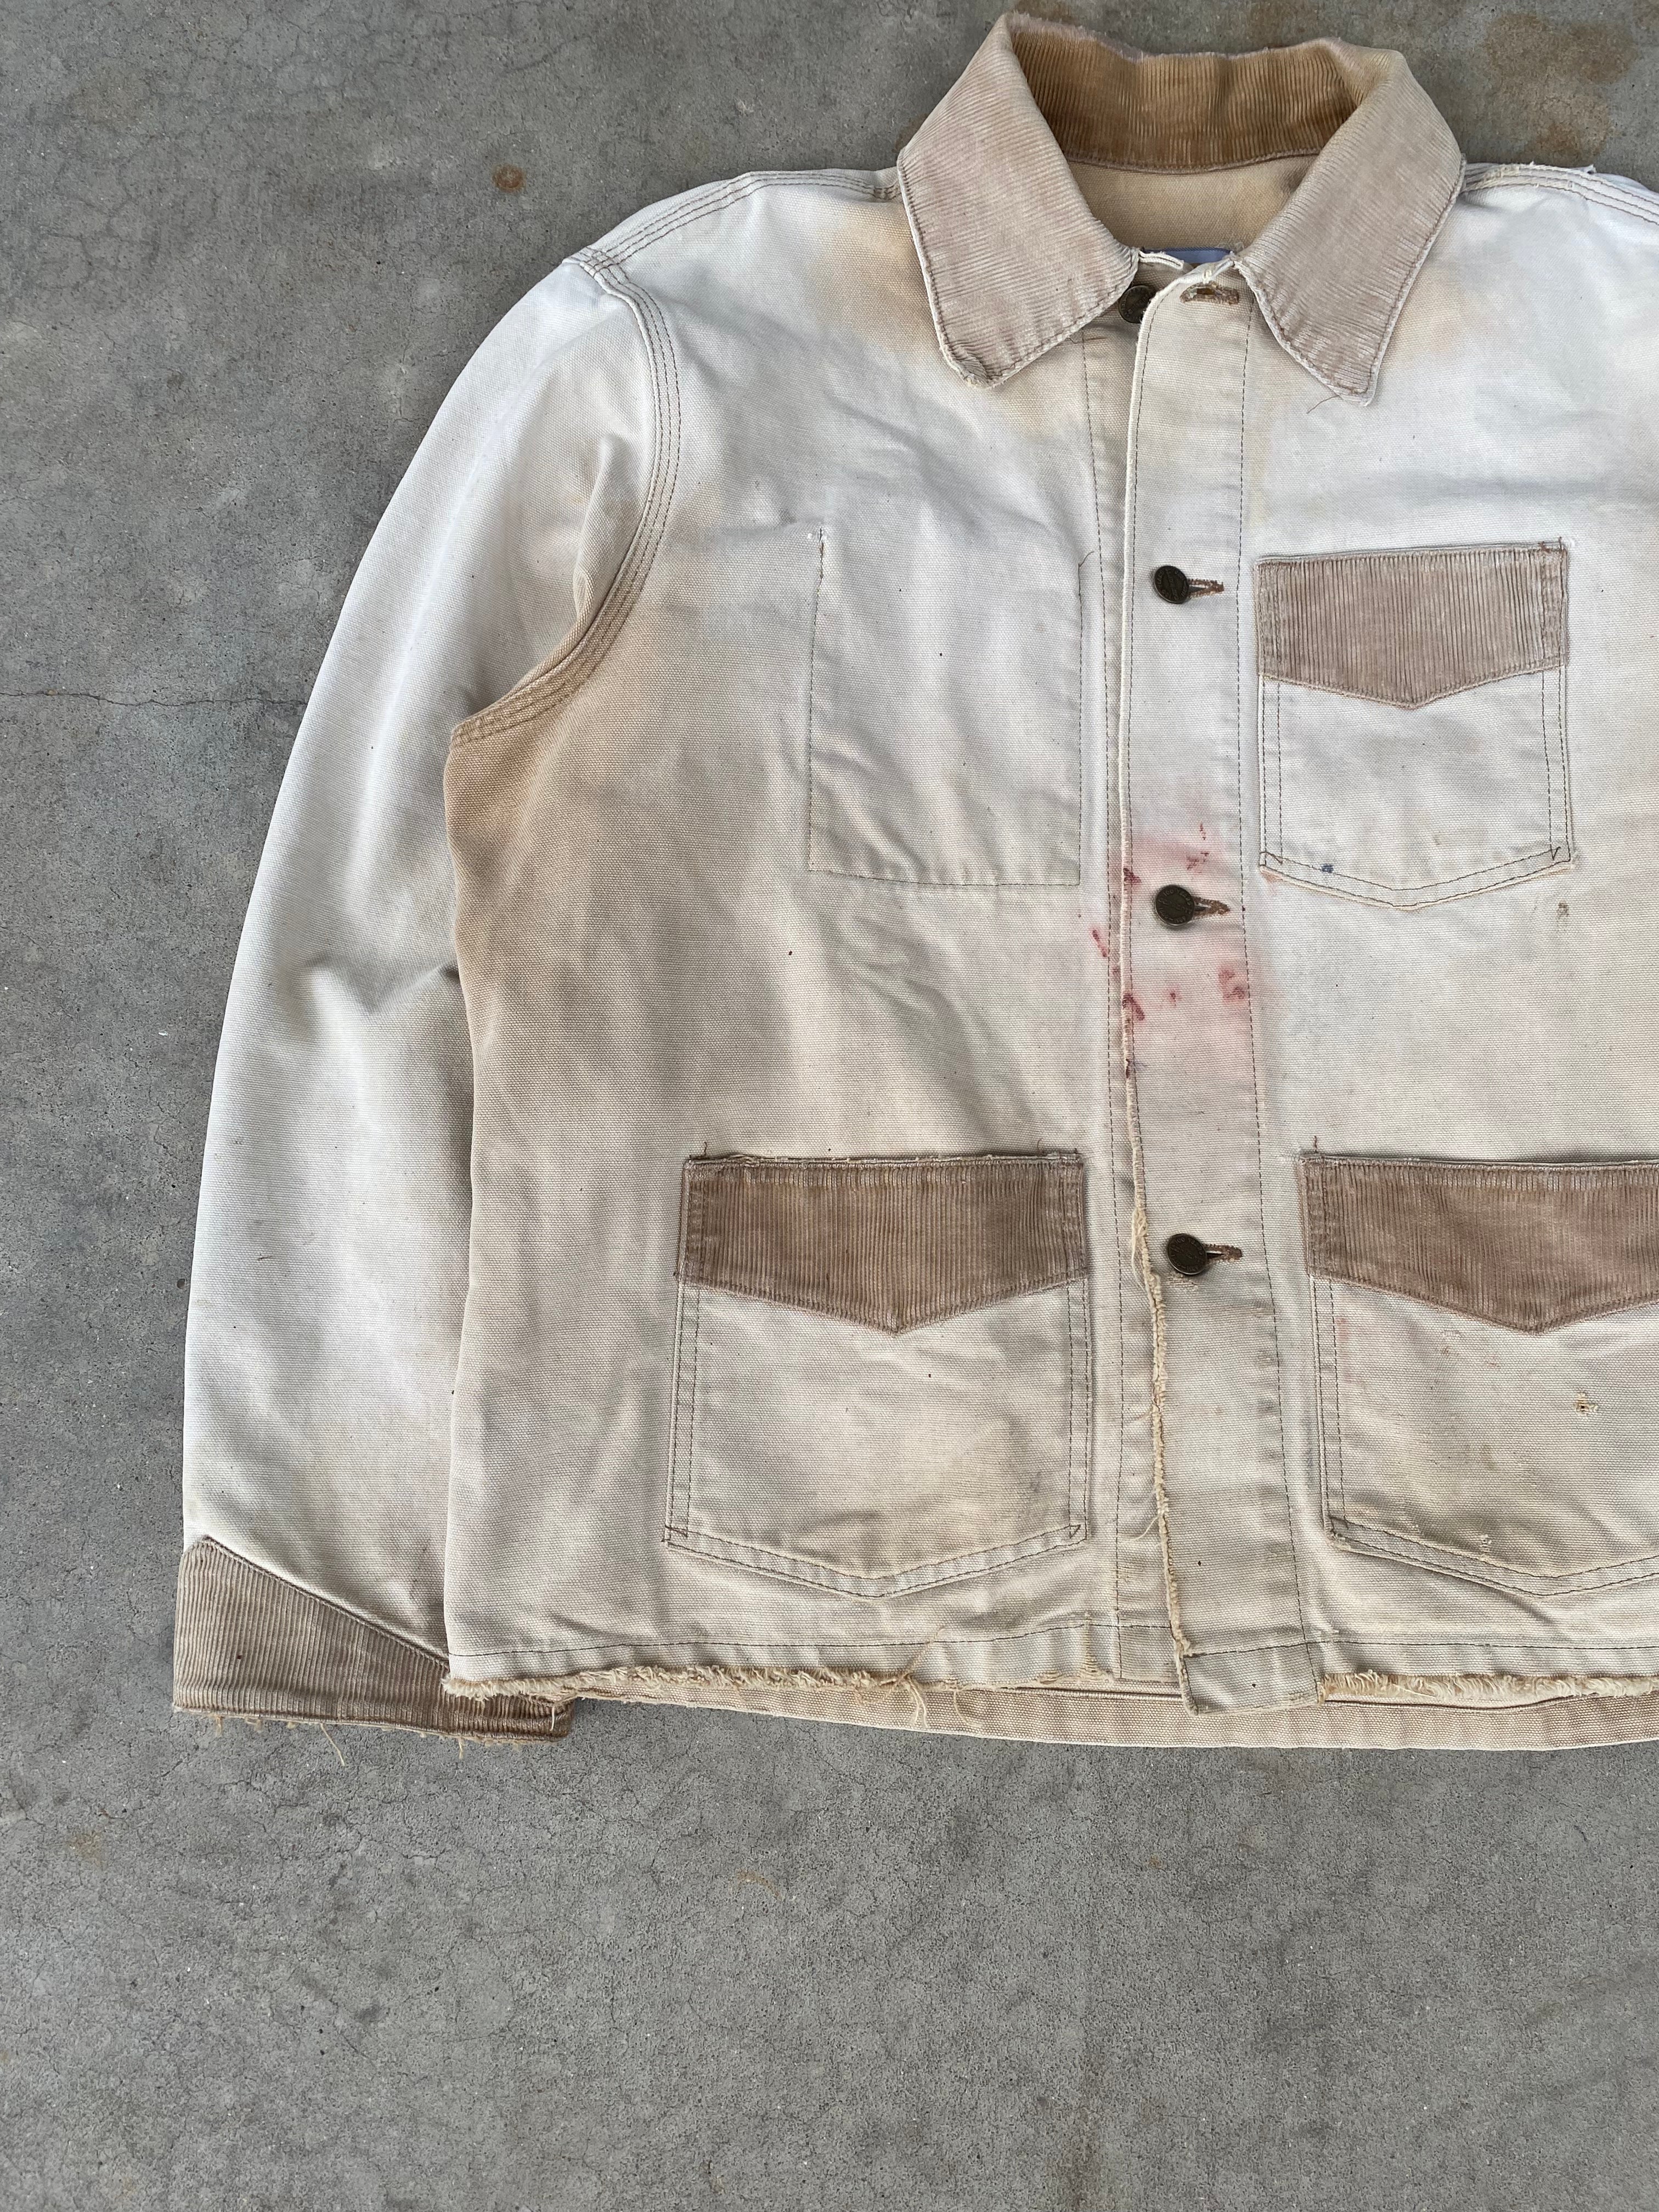 1980s Carhartt Distressed Chore Jacket (L/XL)